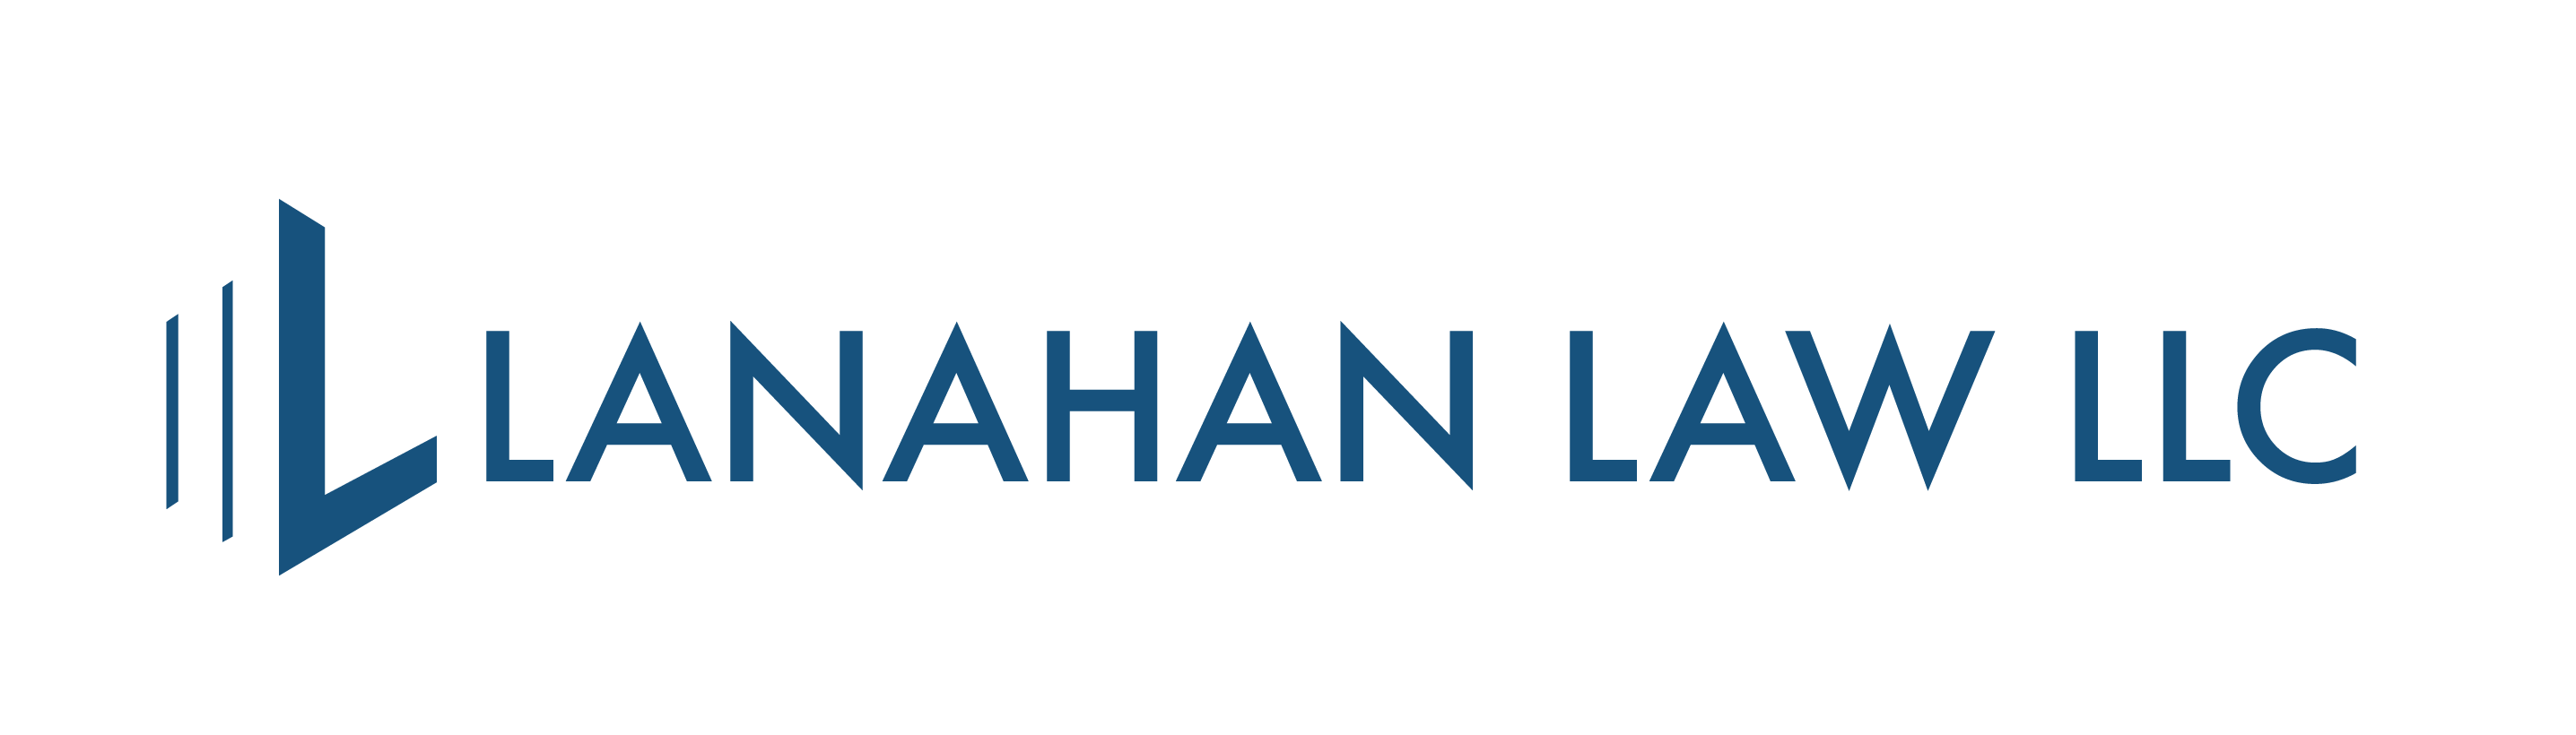 Lanahan Law, LLC